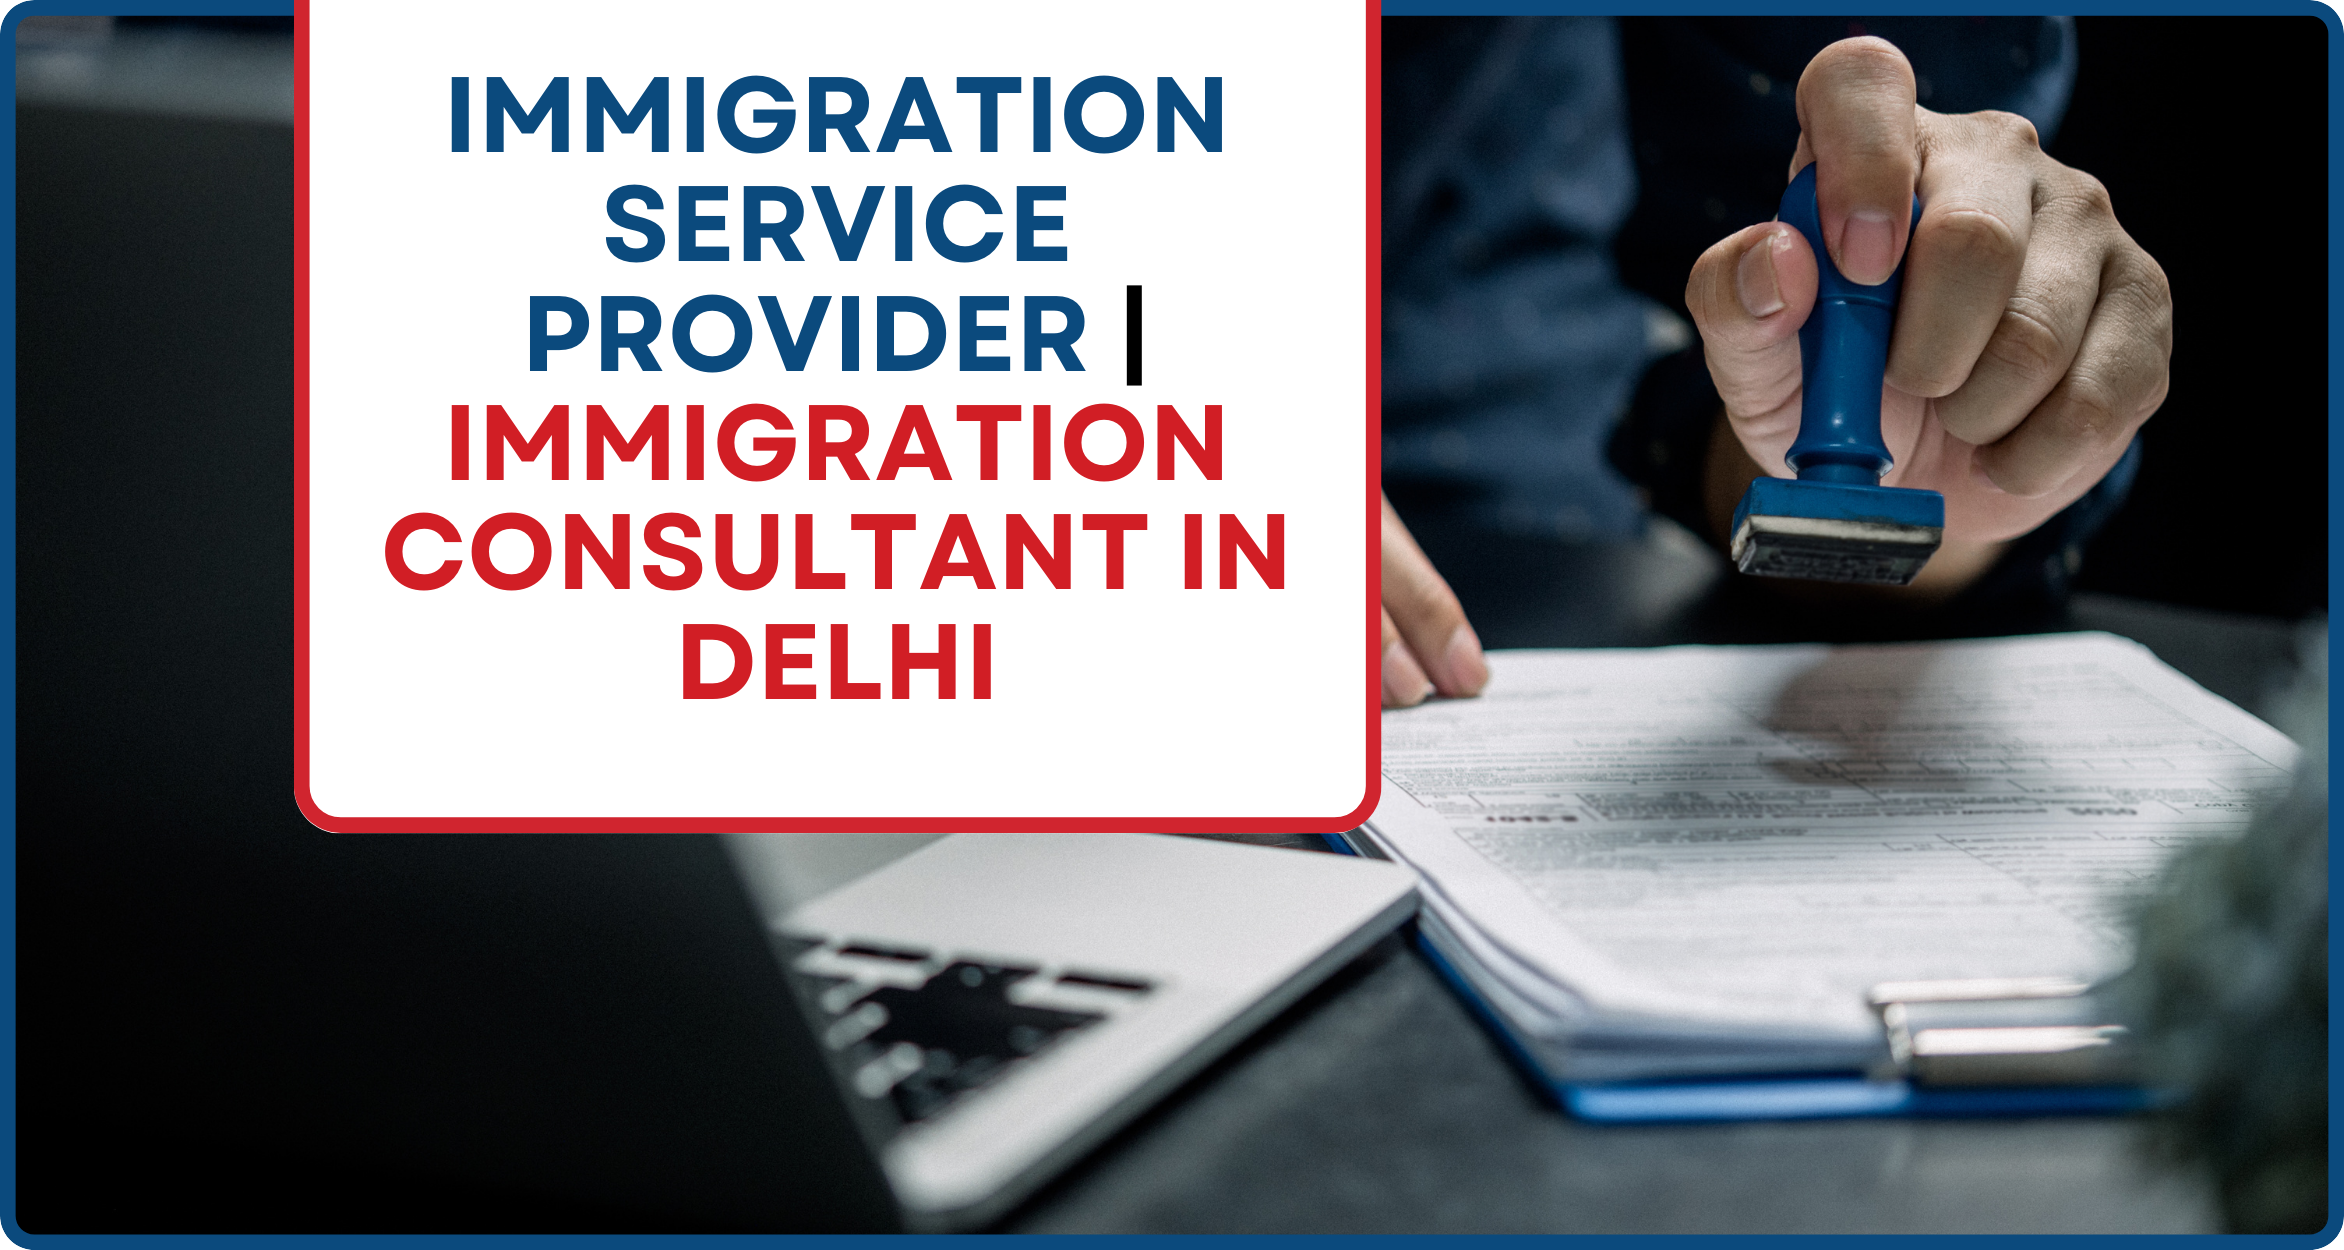 Immigration Service Provider | Immigration Consultant in Delhi